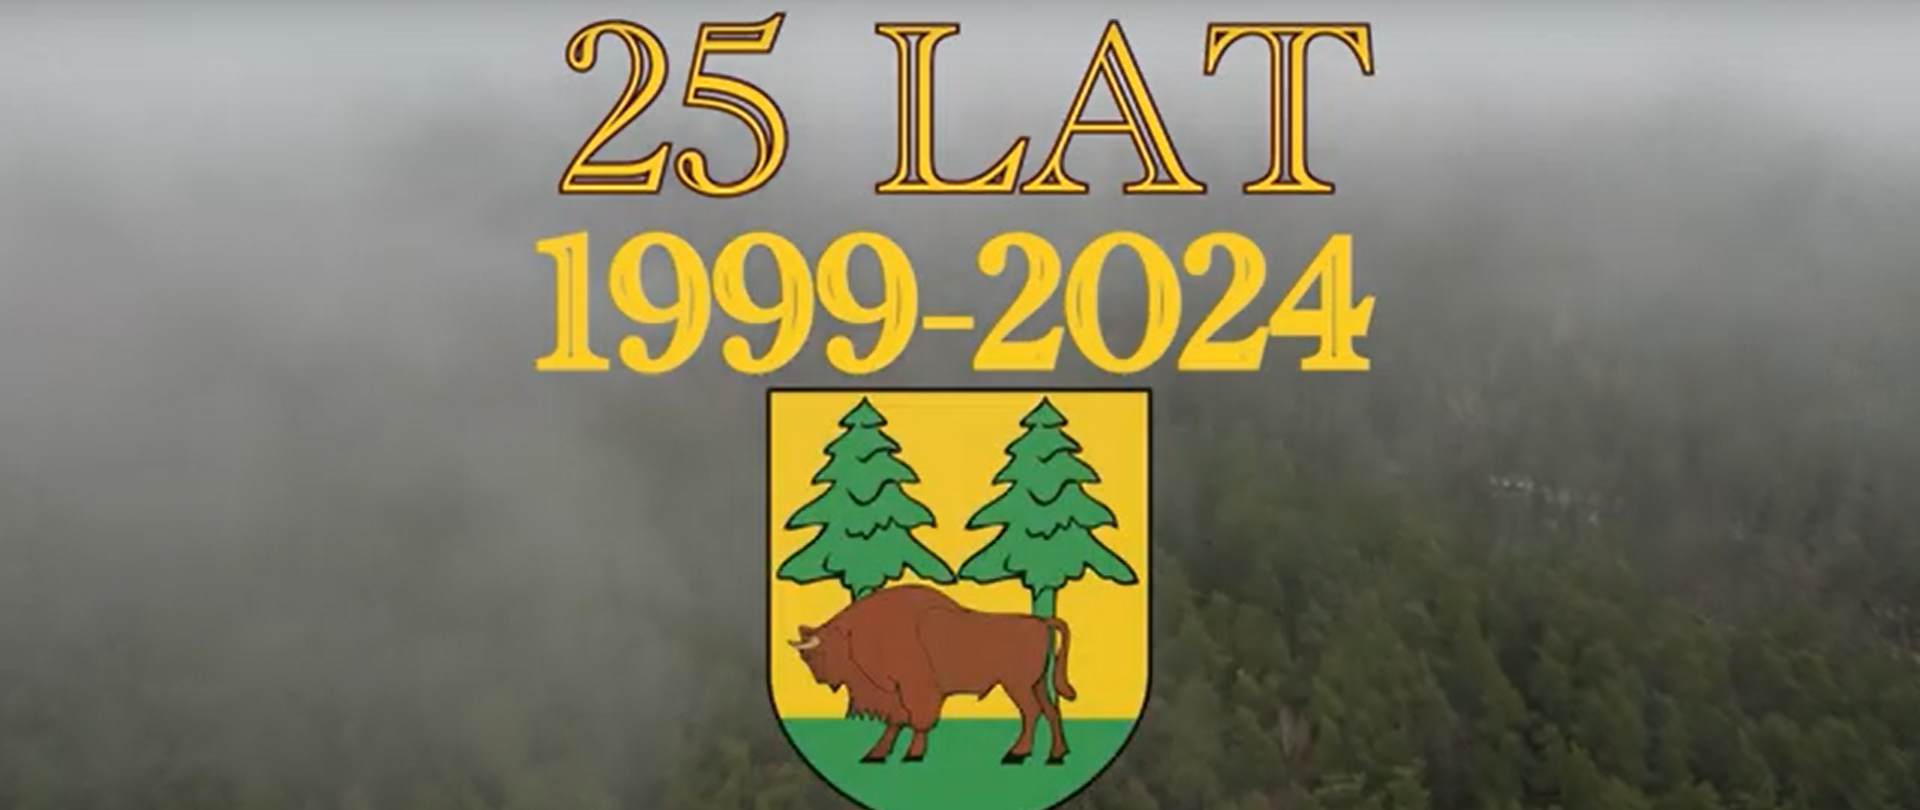 Kadr z filmu - na tle lasu herb powiatu i napisy: 25 lat 1999-2024, #AktywnyPowiat